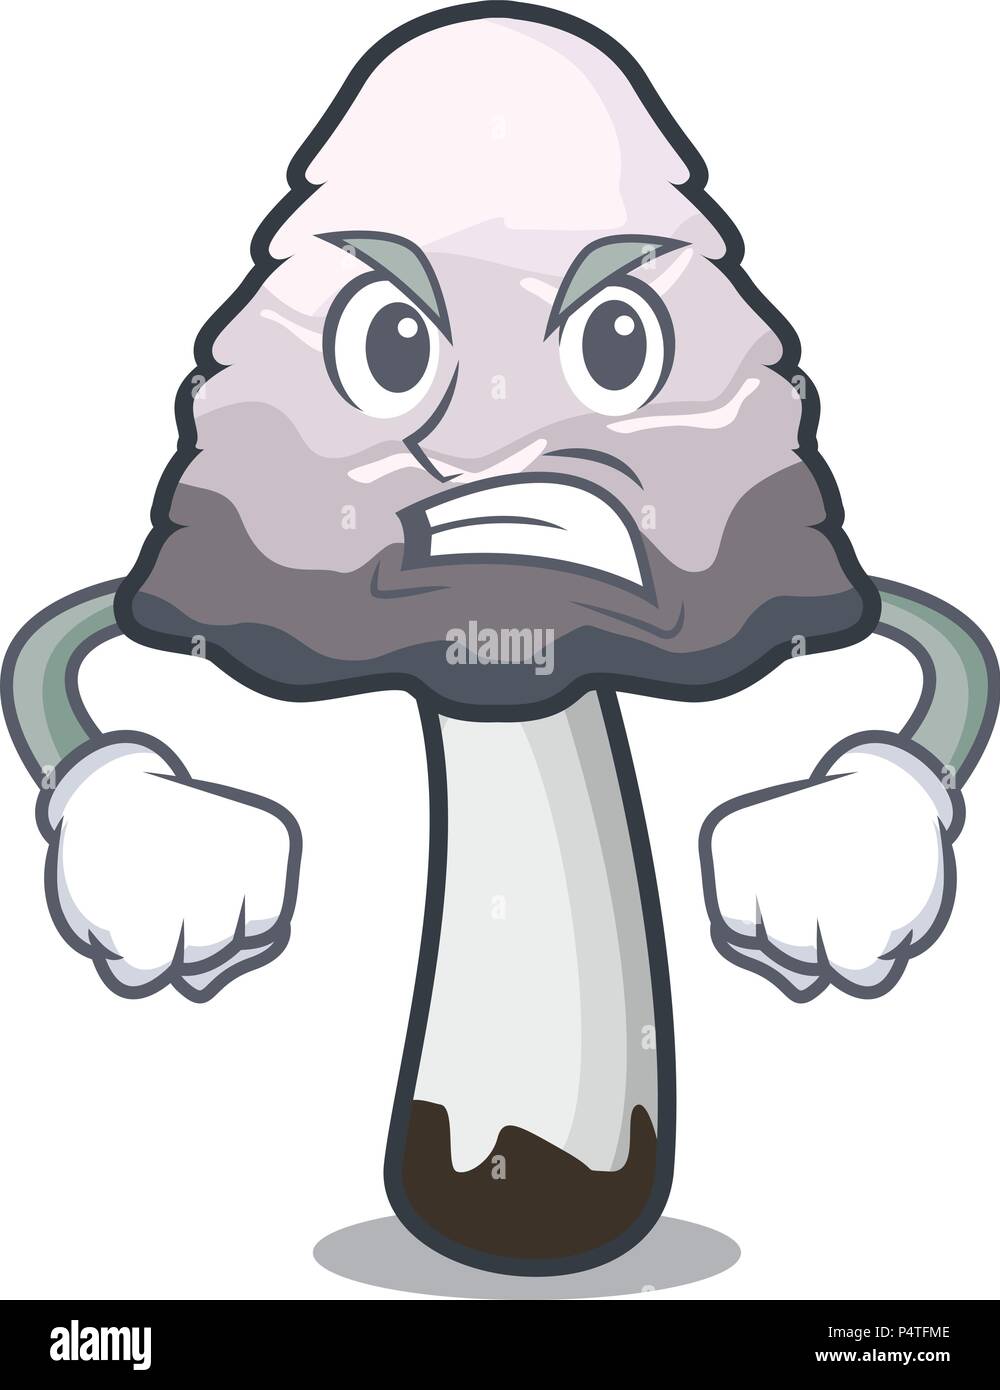 Angry shaggy mane mushroom mascot cartoon Stock Vector